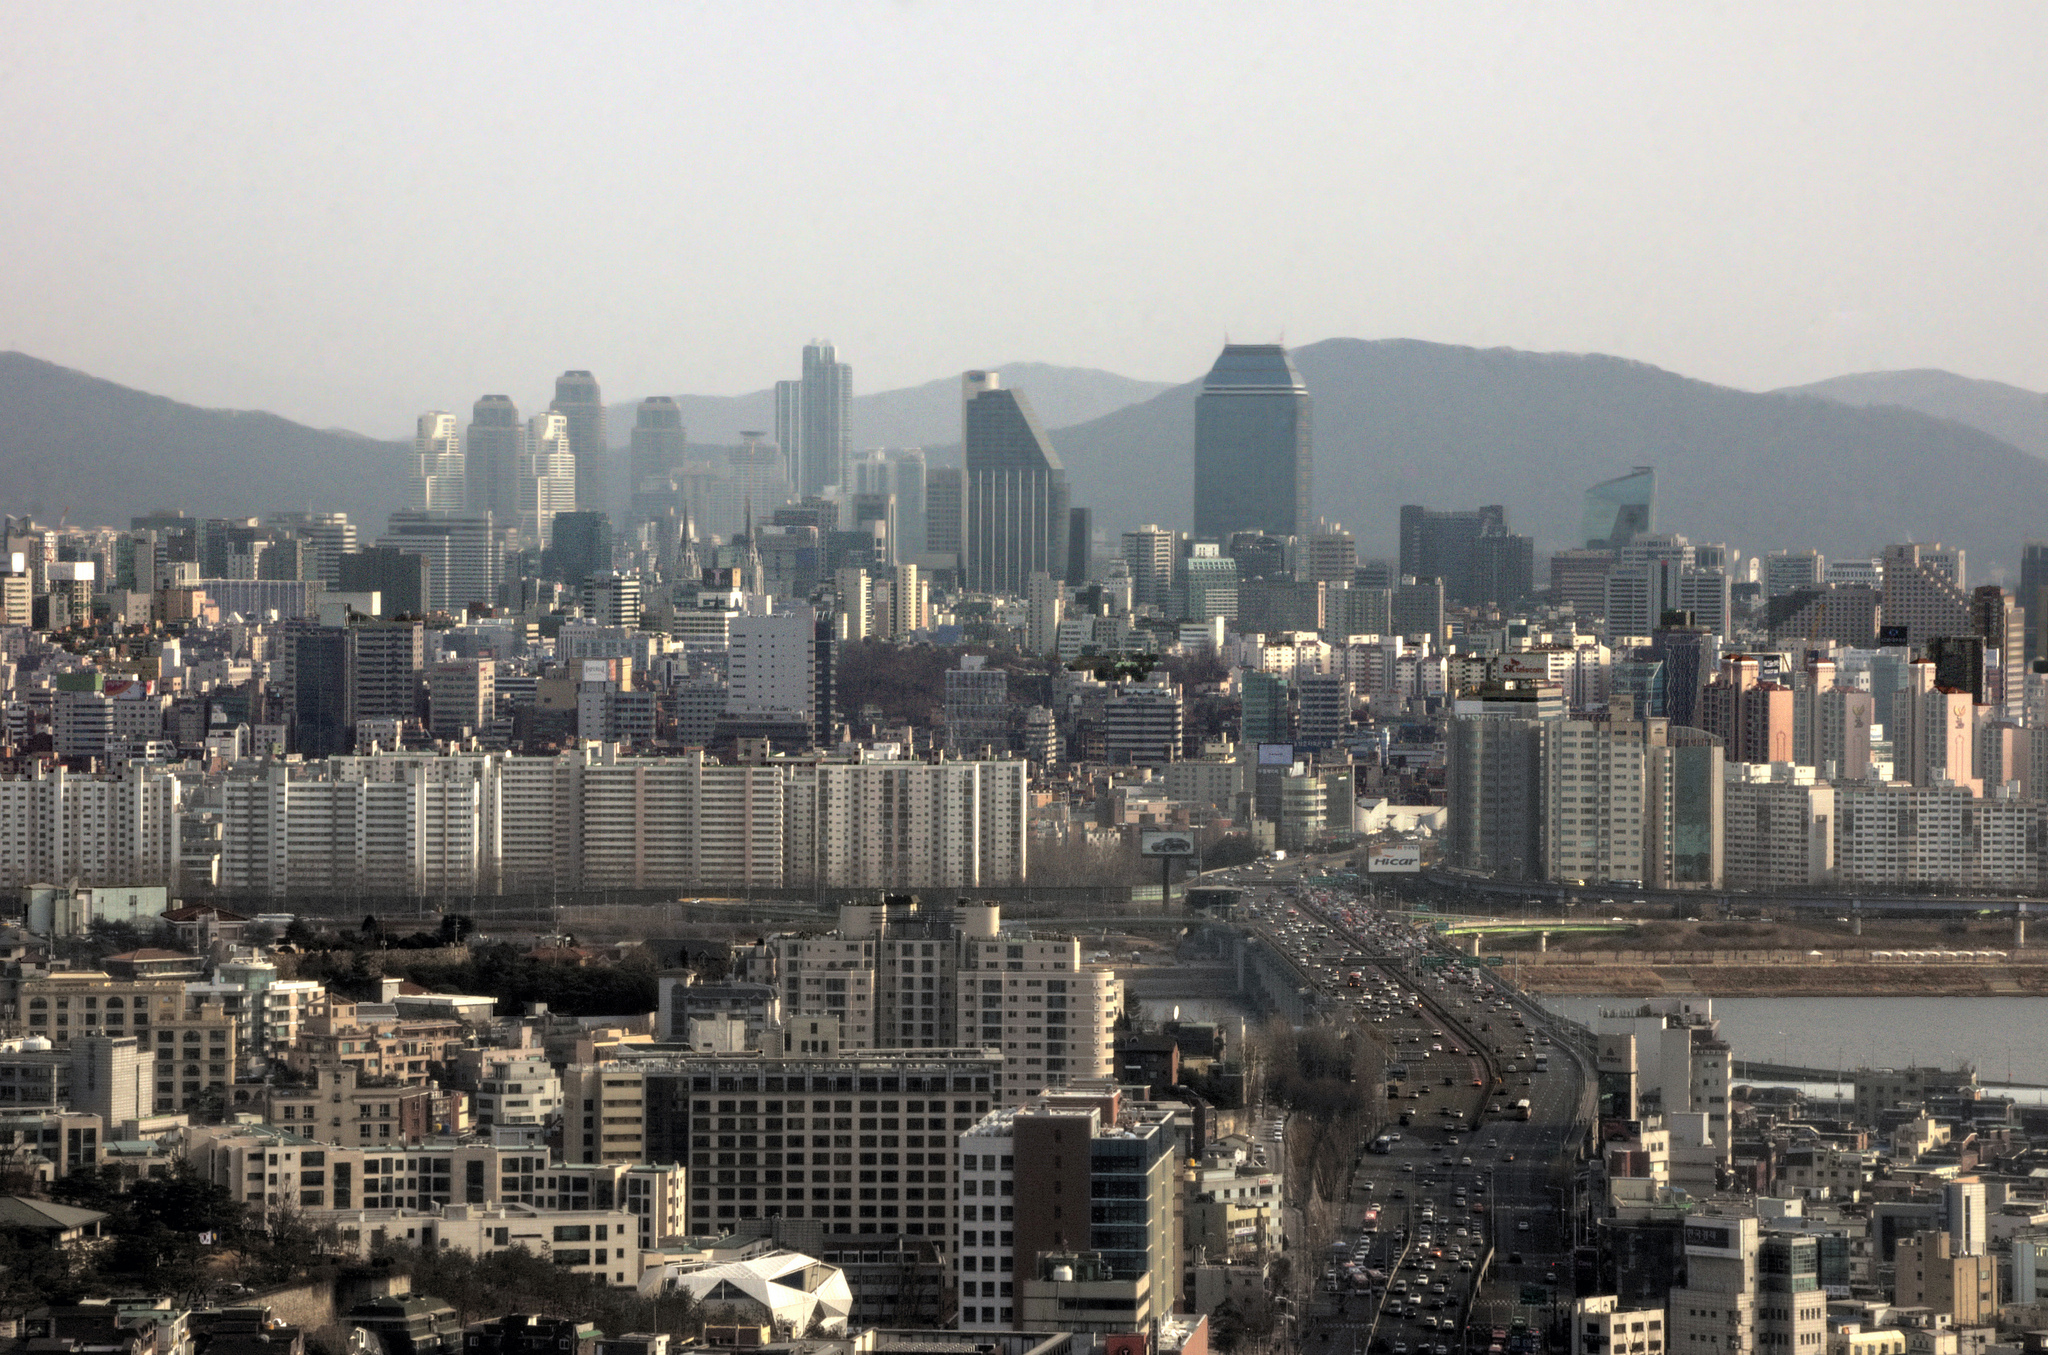 Share city. Seoul Skyline. Самый развитый город в мире. Самые красивые развитые города. Самый развитый город фото.